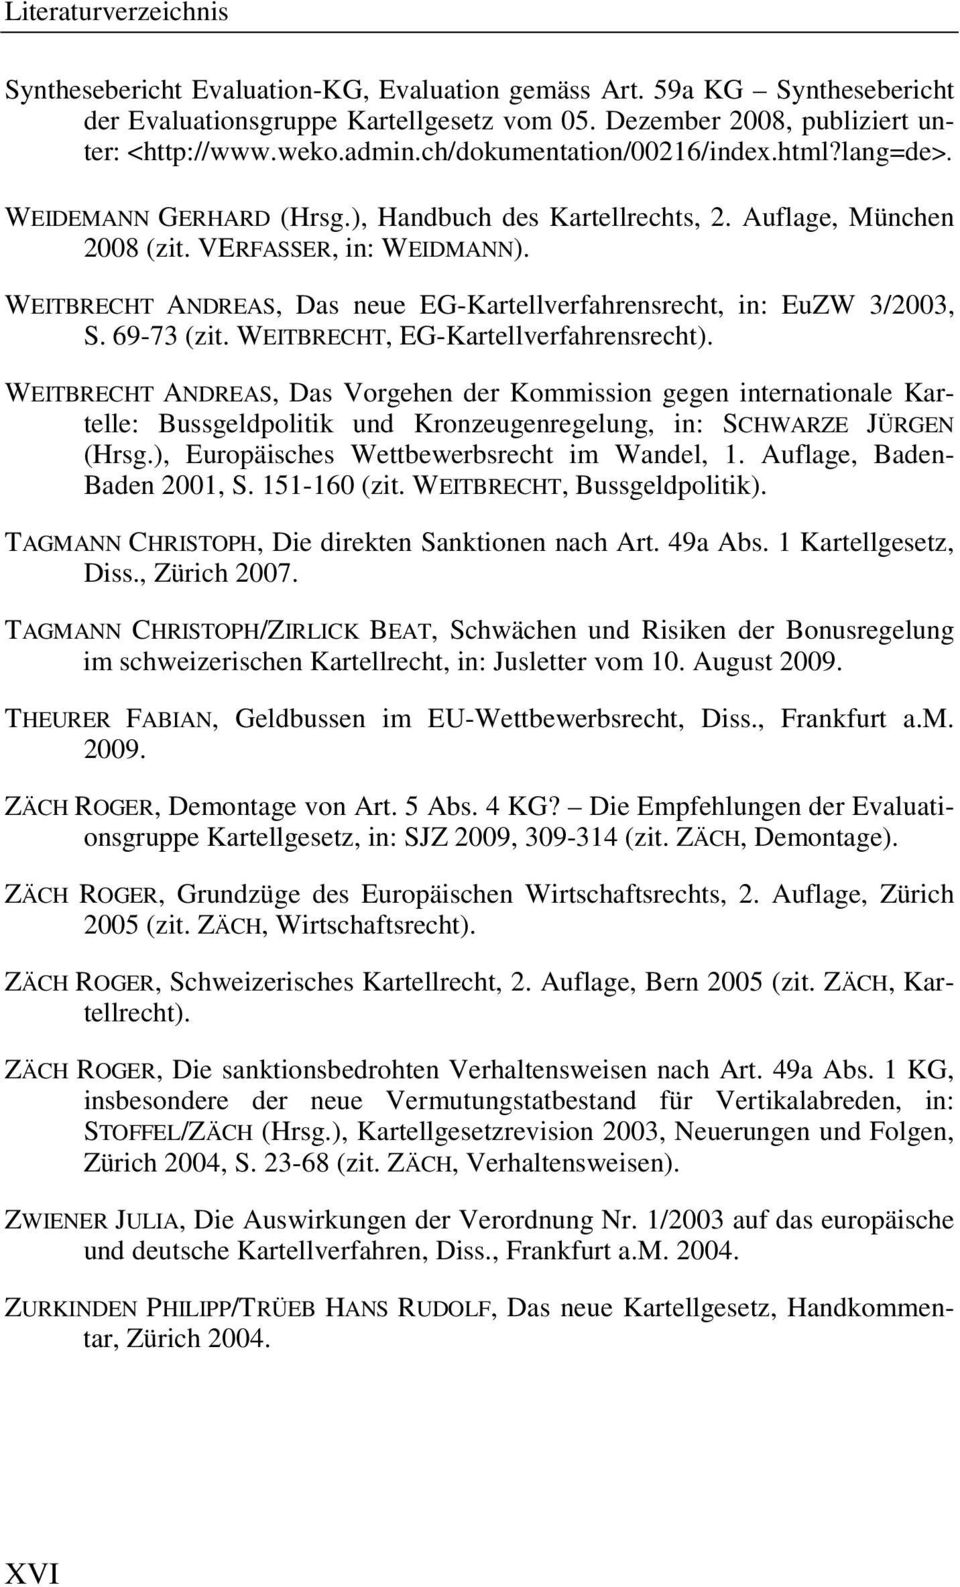 WEITBRECHT ANDREAS, Das neue EG-Kartellverfahrensrecht, in: EuZW 3/2003, S. 69-73 (zit. WEITBRECHT, EG-Kartellverfahrensrecht).